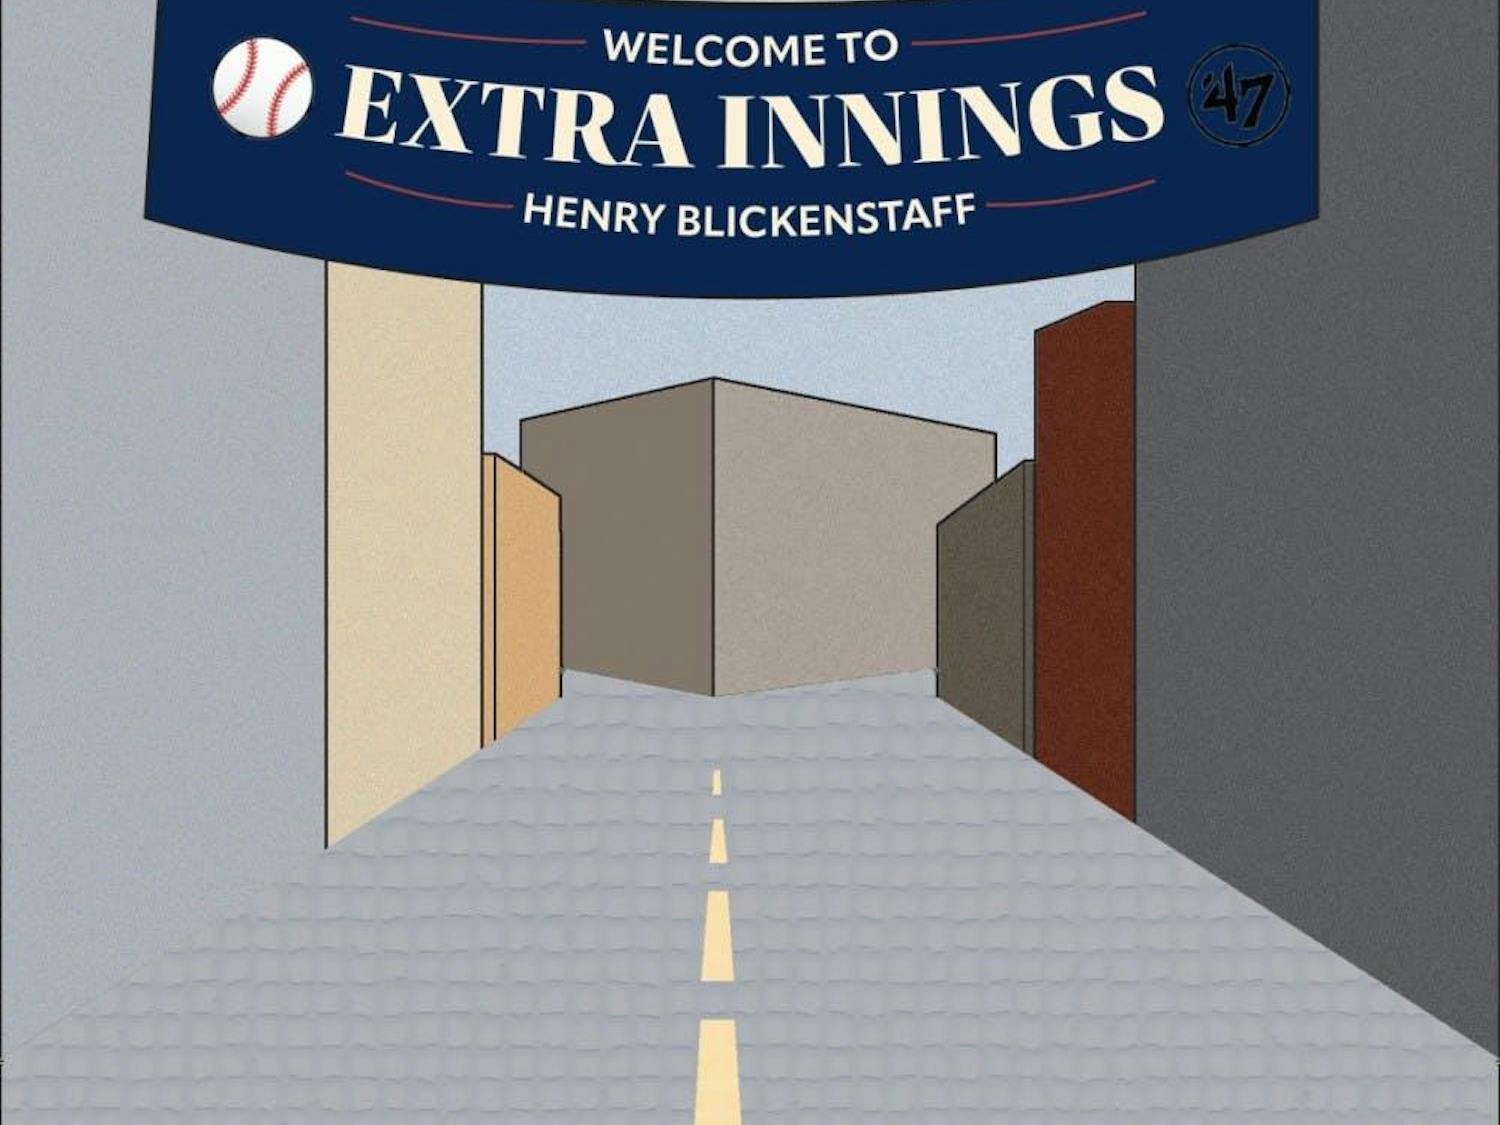 extra innings-henry blickenstaff